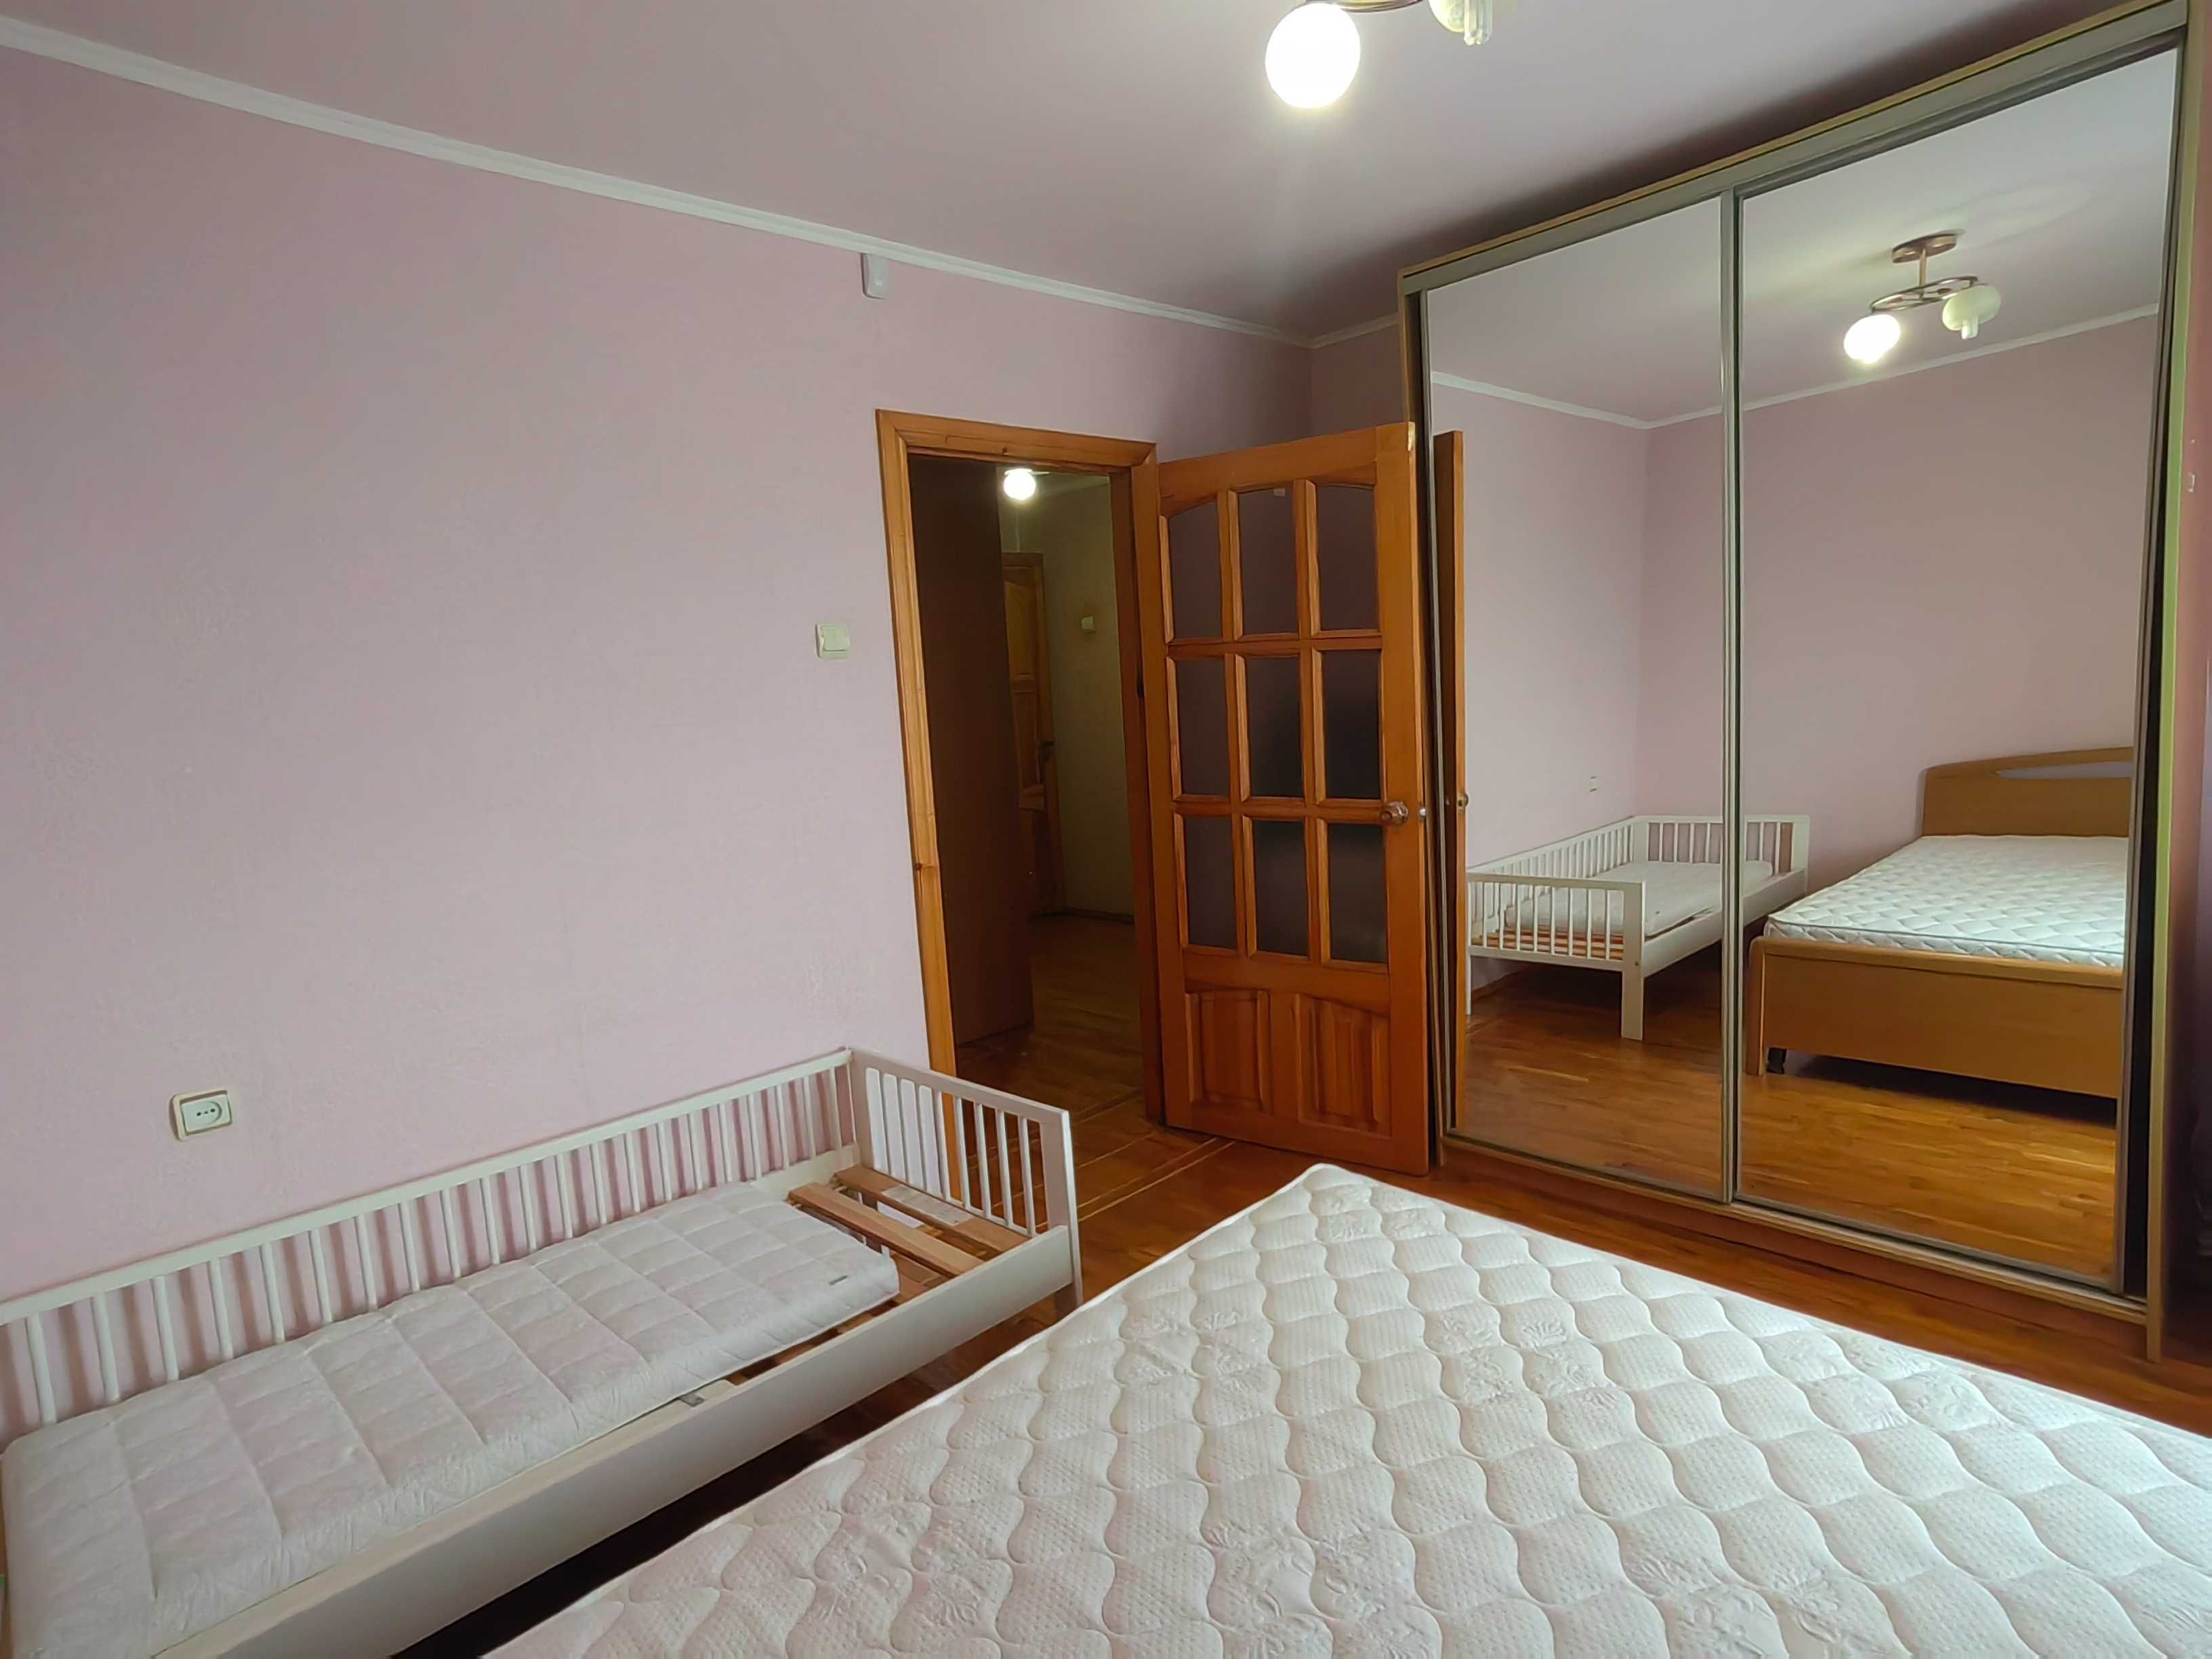 Продам 2 комнатную квартиру в центре Залютино Є-відновлення